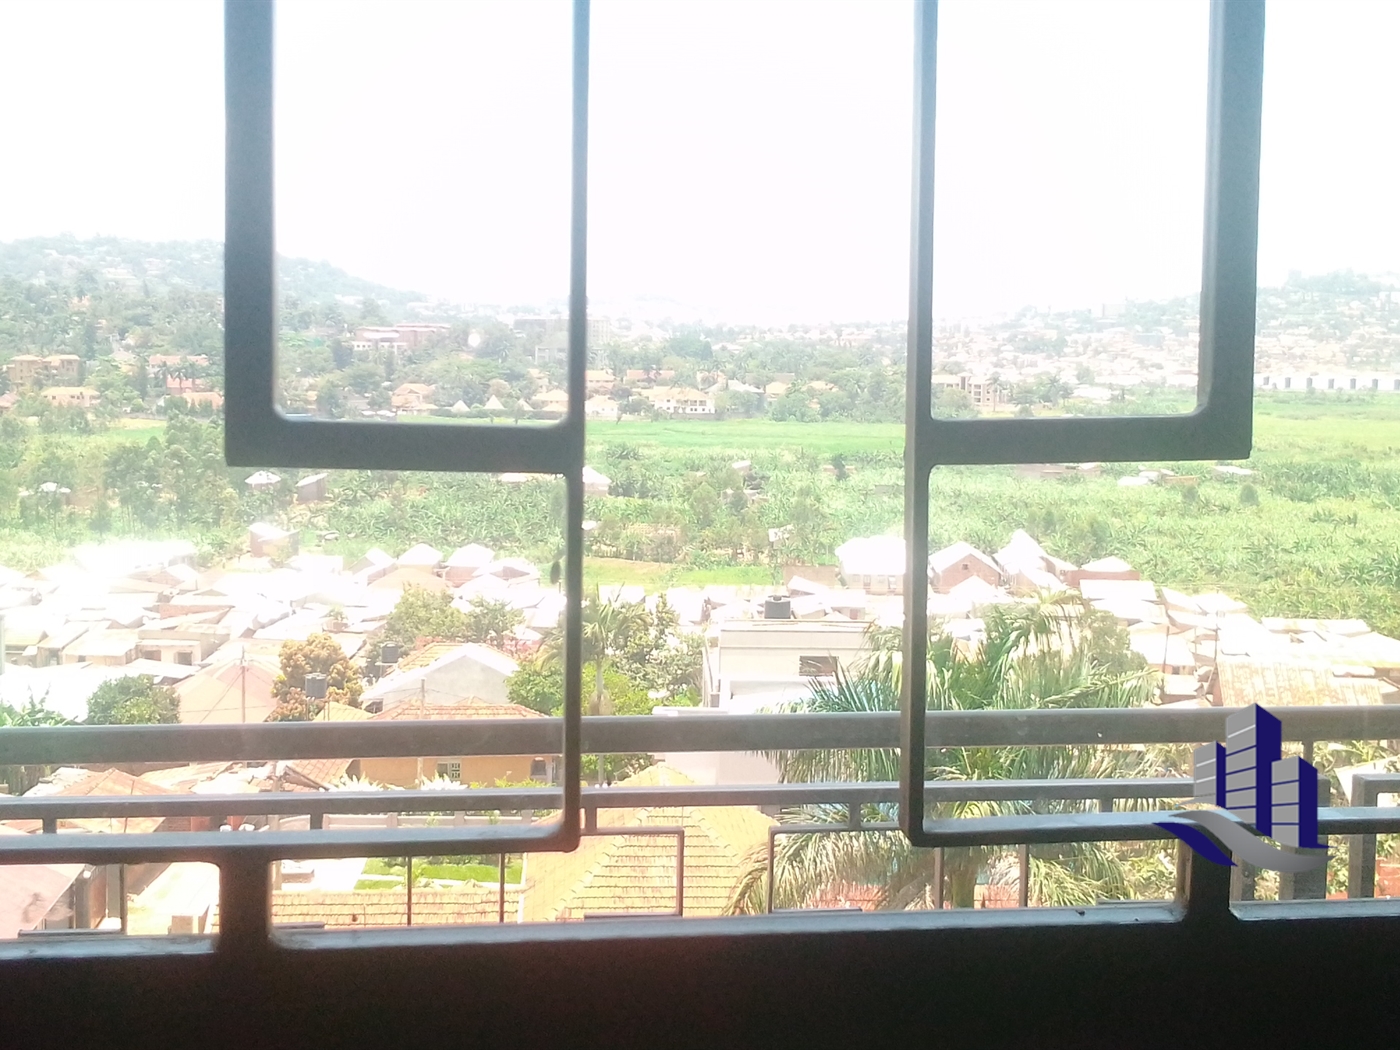 Condominium for sale in Muyenga Kampala